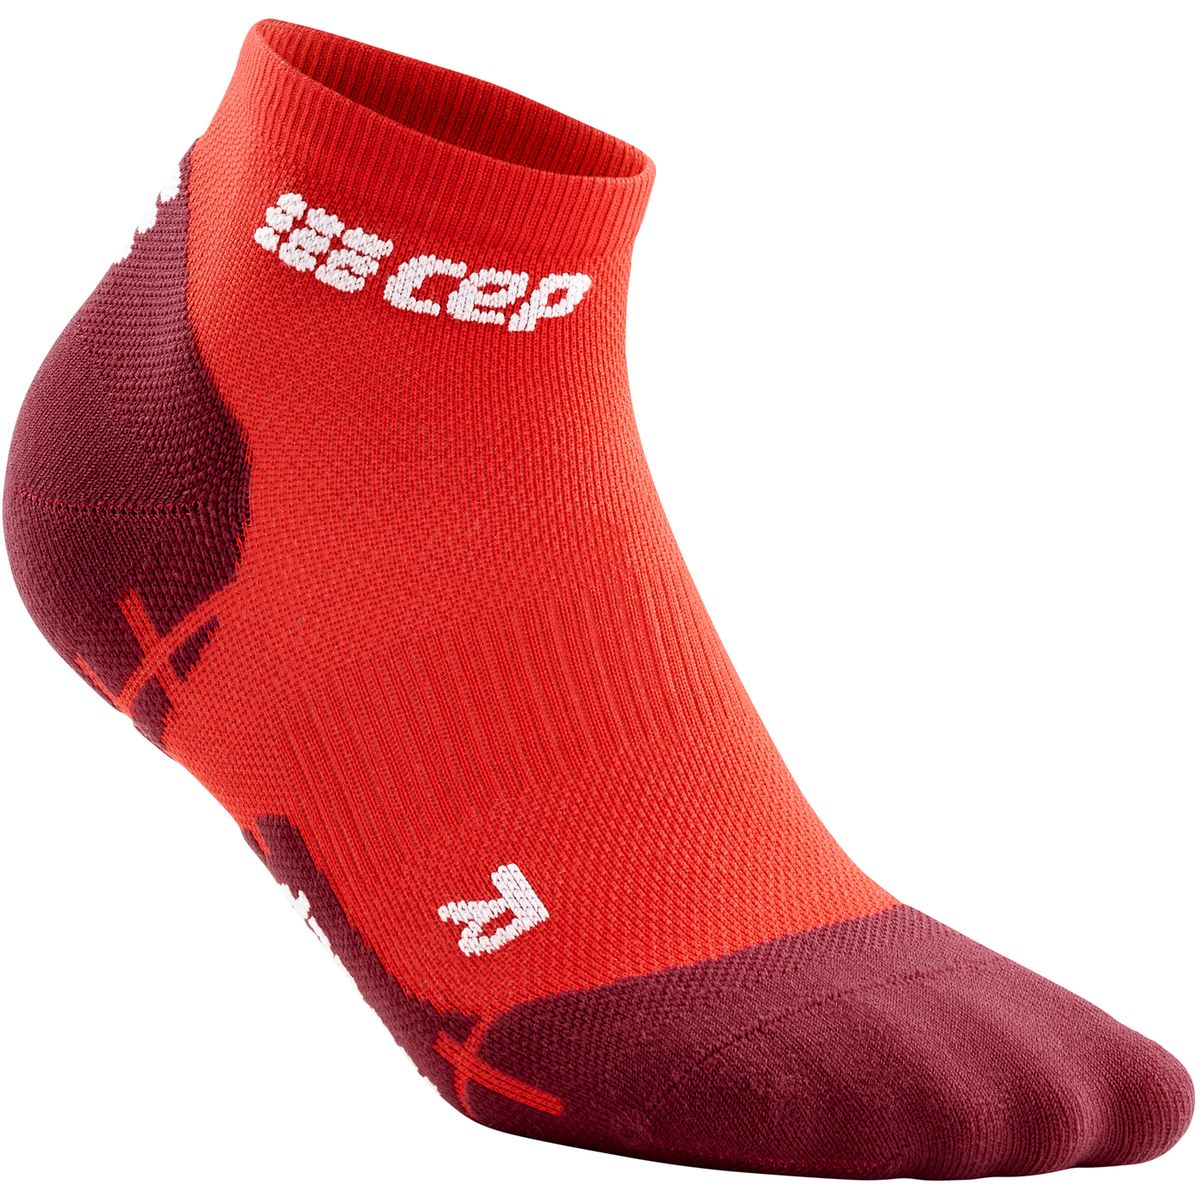 Cep Ultralight Low-Cut Socks Herren Socken